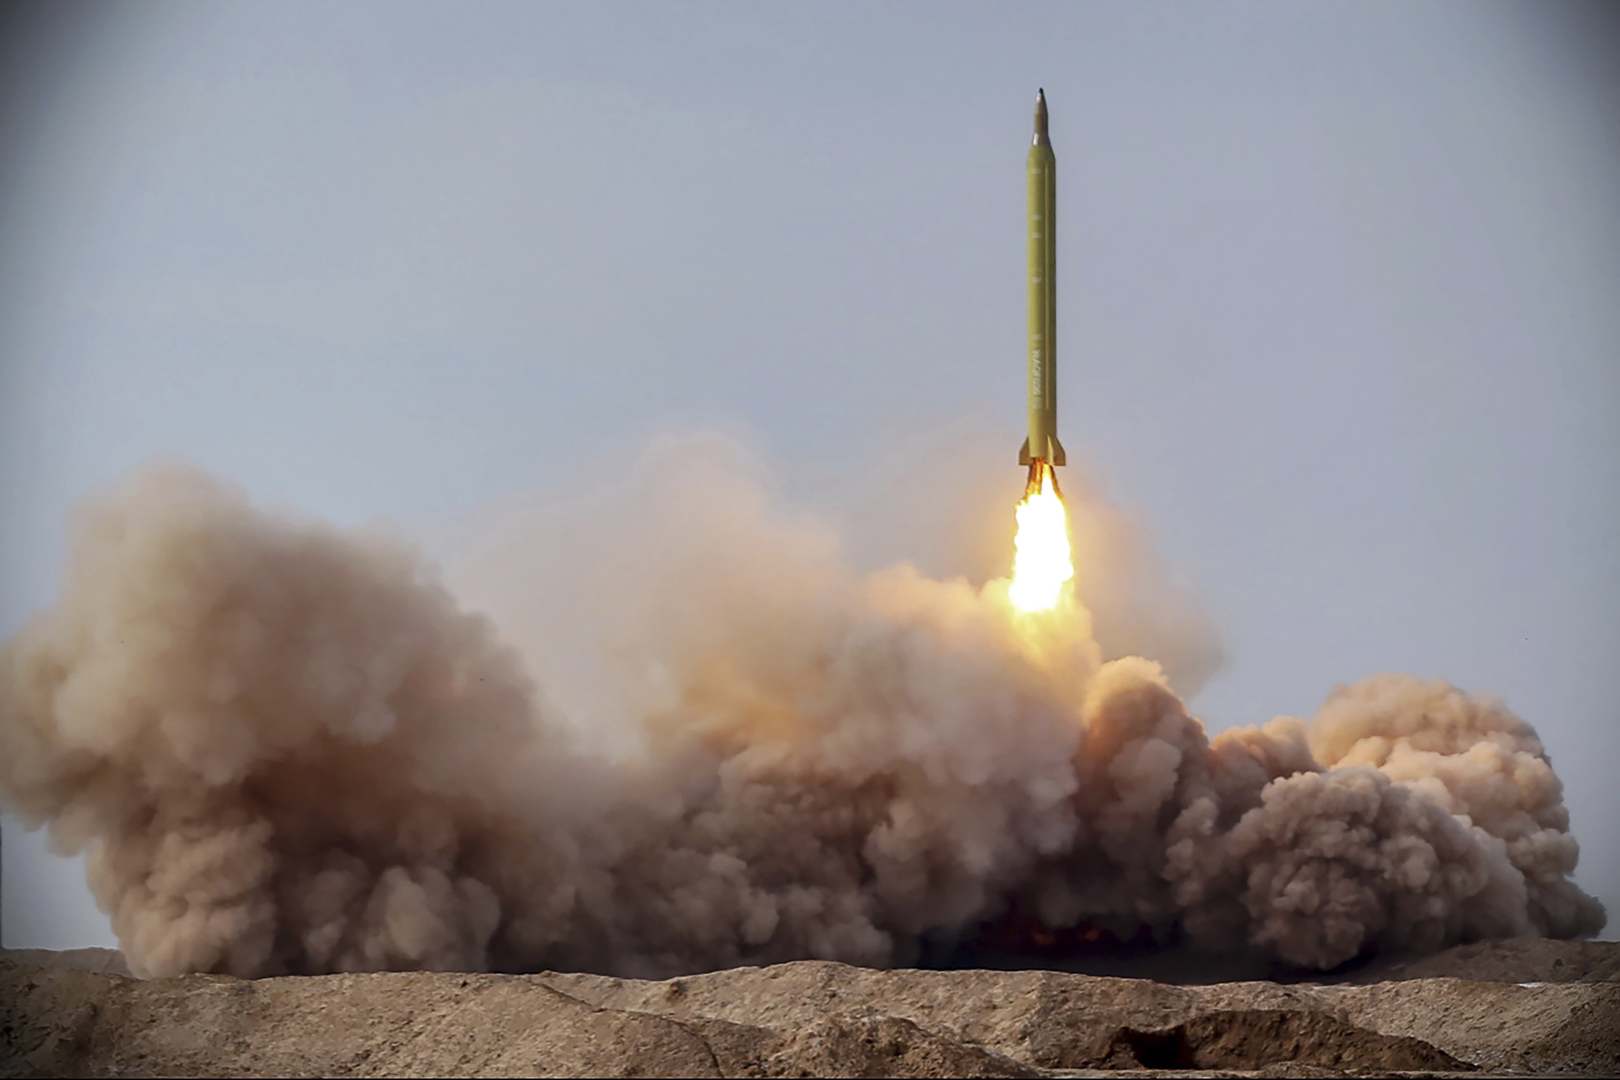 الحرس الثوري الإيراني يكشف عن صاروخ باليستي يصل مداه إلى 1450 كيلومترا ويصيب الهدف بـ